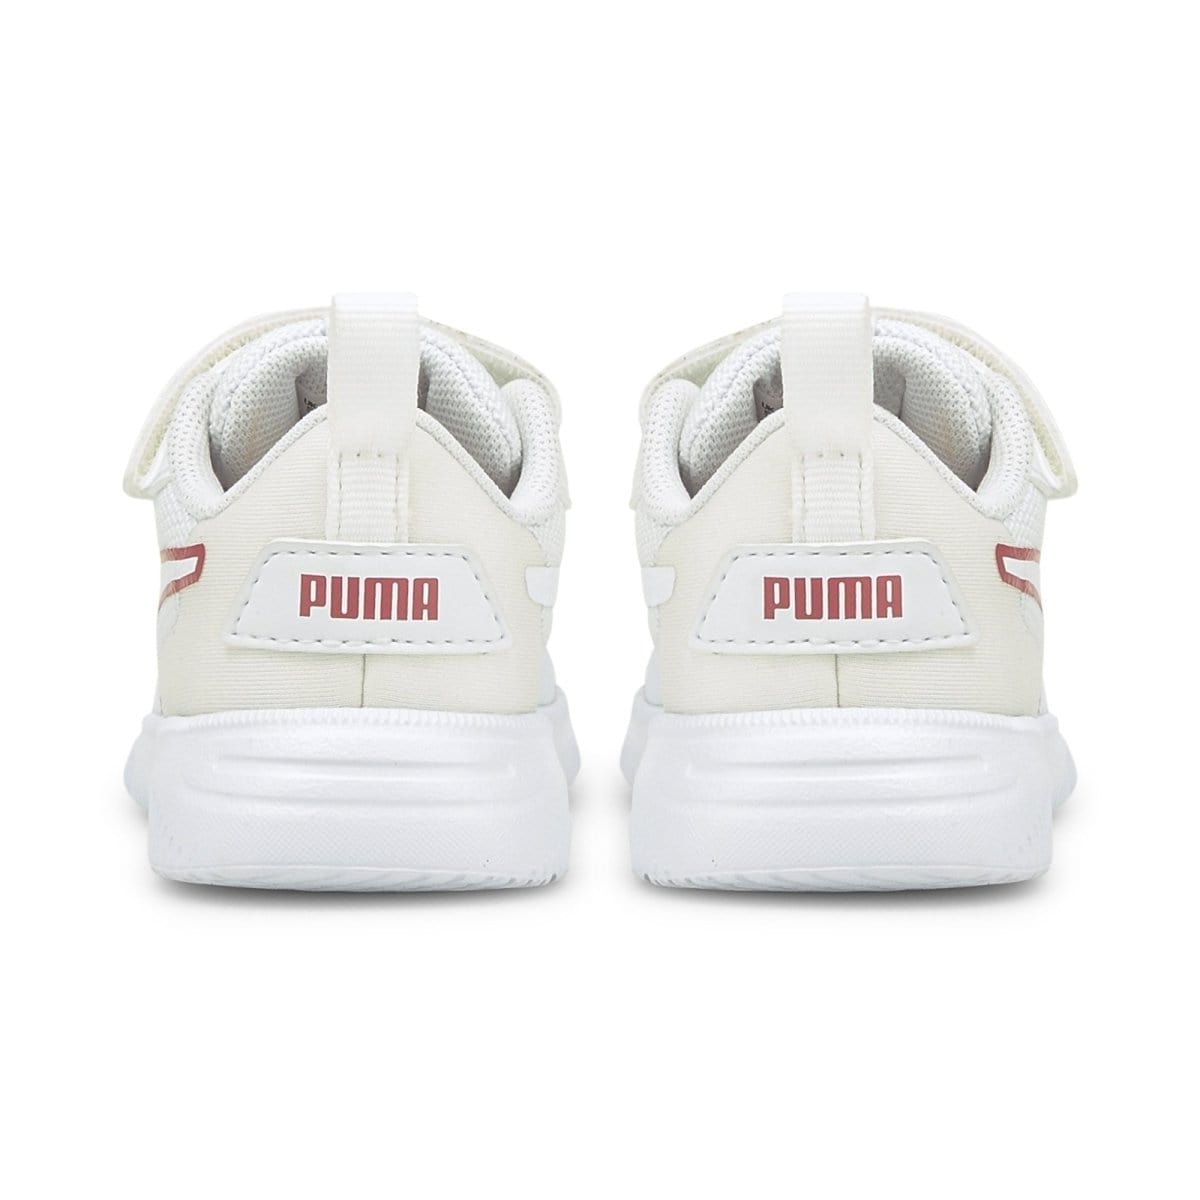 Puma PUMA INFANT'S FLEX WHITE SHOE - INSPORT